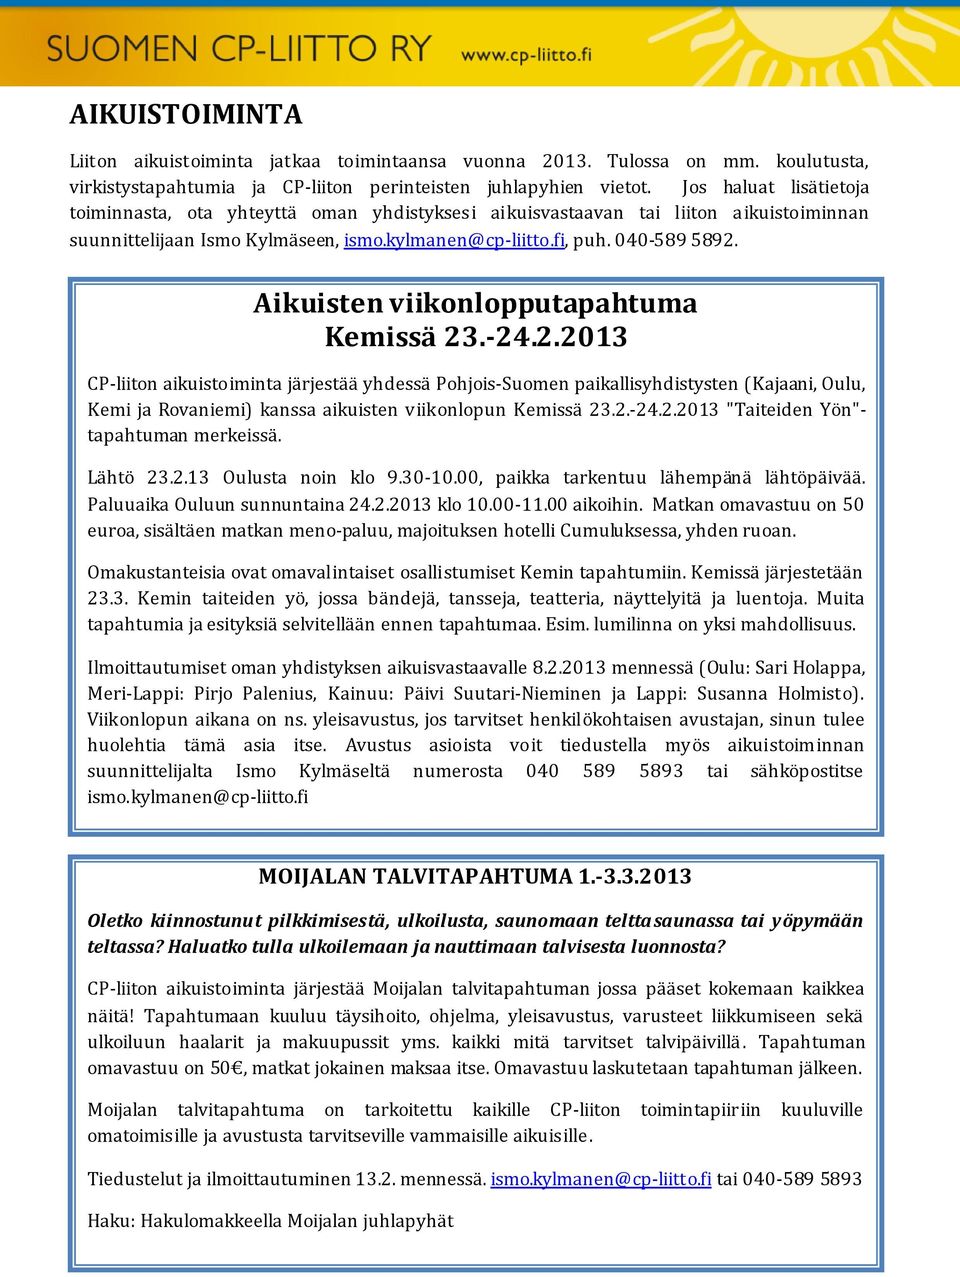 Aikuisten viikonlopputapahtuma Kemissä 23.-24.2.2013 CP-liiton aikuistoiminta järjestää yhdessä Pohjois-Suomen paikallisyhdistysten (Kajaani, Oulu, Kemi ja Rovaniemi) kanssa aikuisten viikonlopun Kemissä 23.